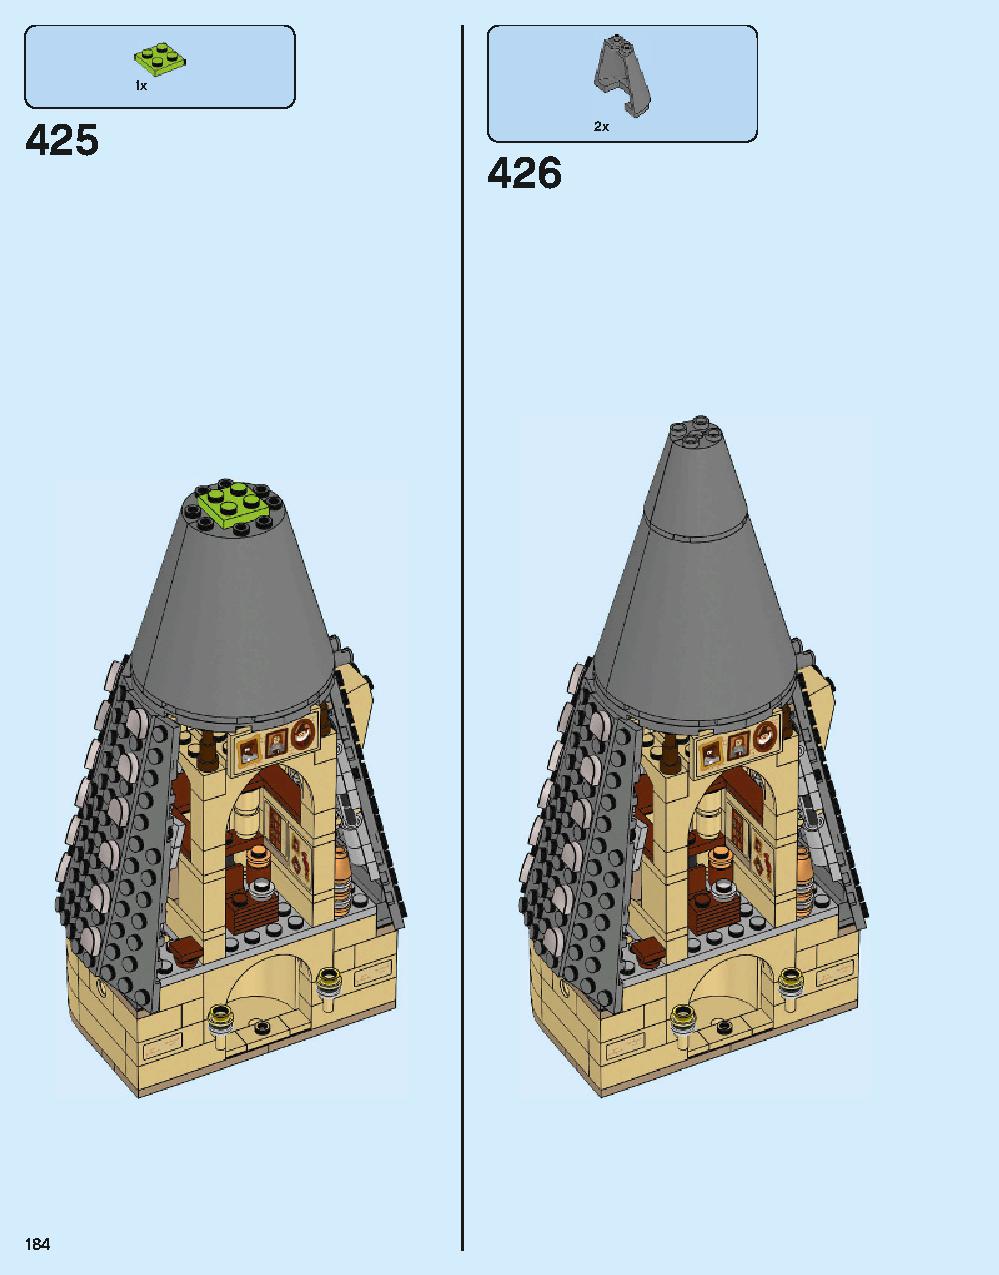 ホグワーツ城 71043 レゴの商品情報 レゴの説明書・組立方法 184 page